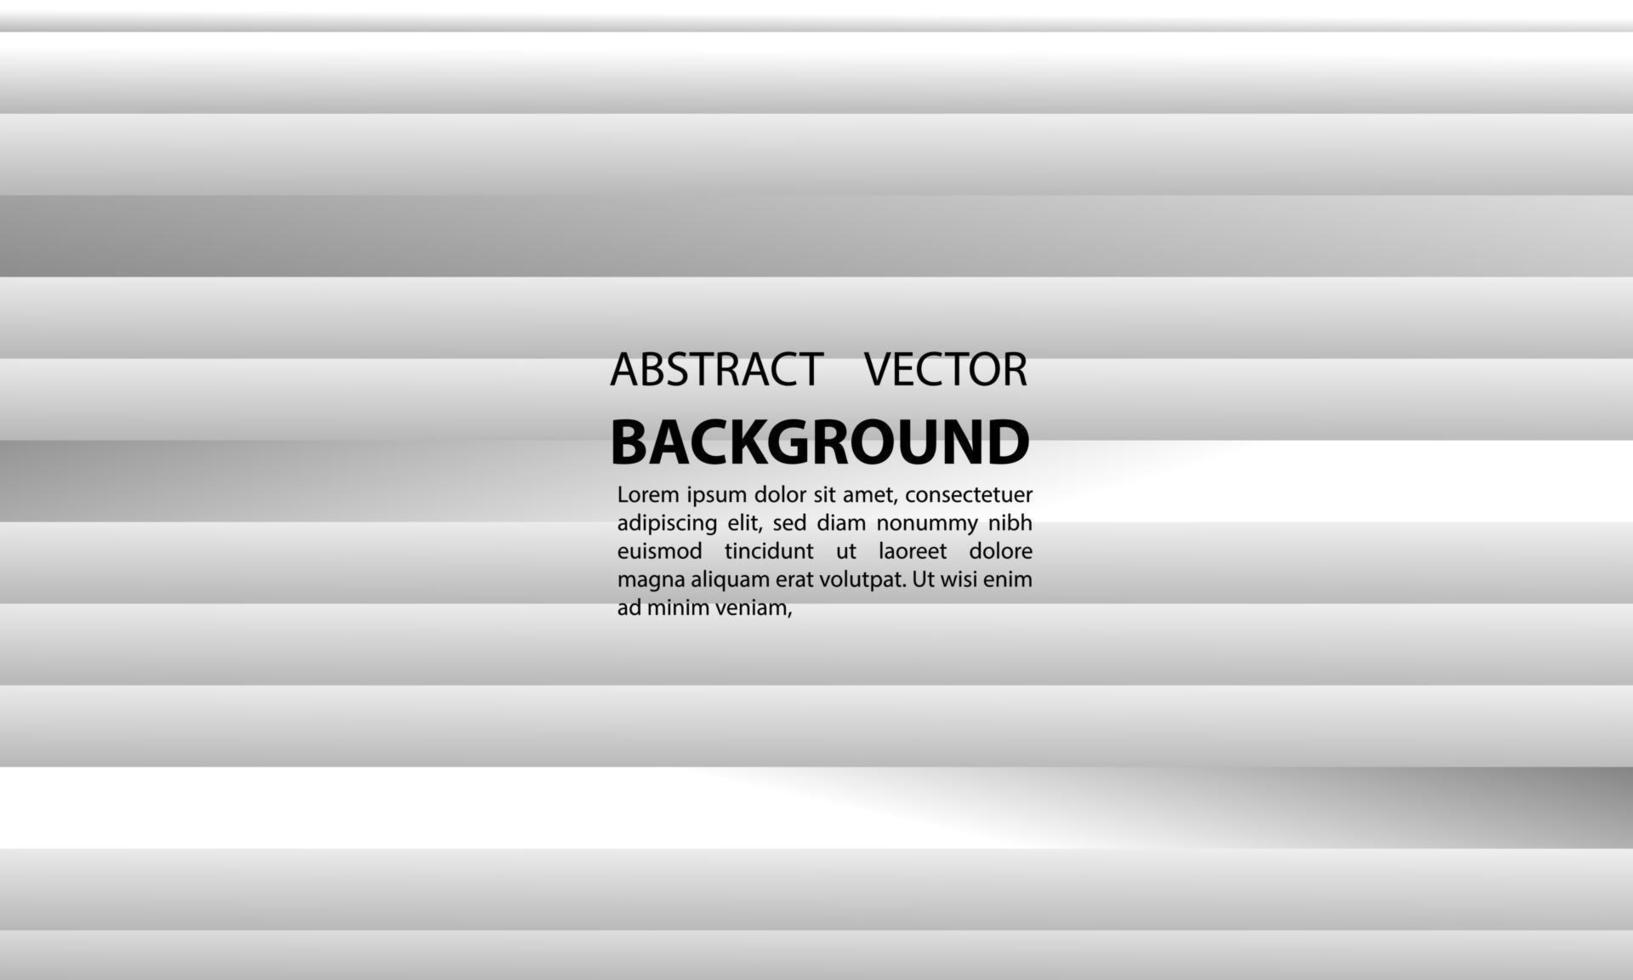 bakgrund abtrak gradient geometrisk horisontell vertikal form abstrakta linjer av grå vektorer, för affischer, banderoller och andra, vektordesignillustration eps 10 vektor